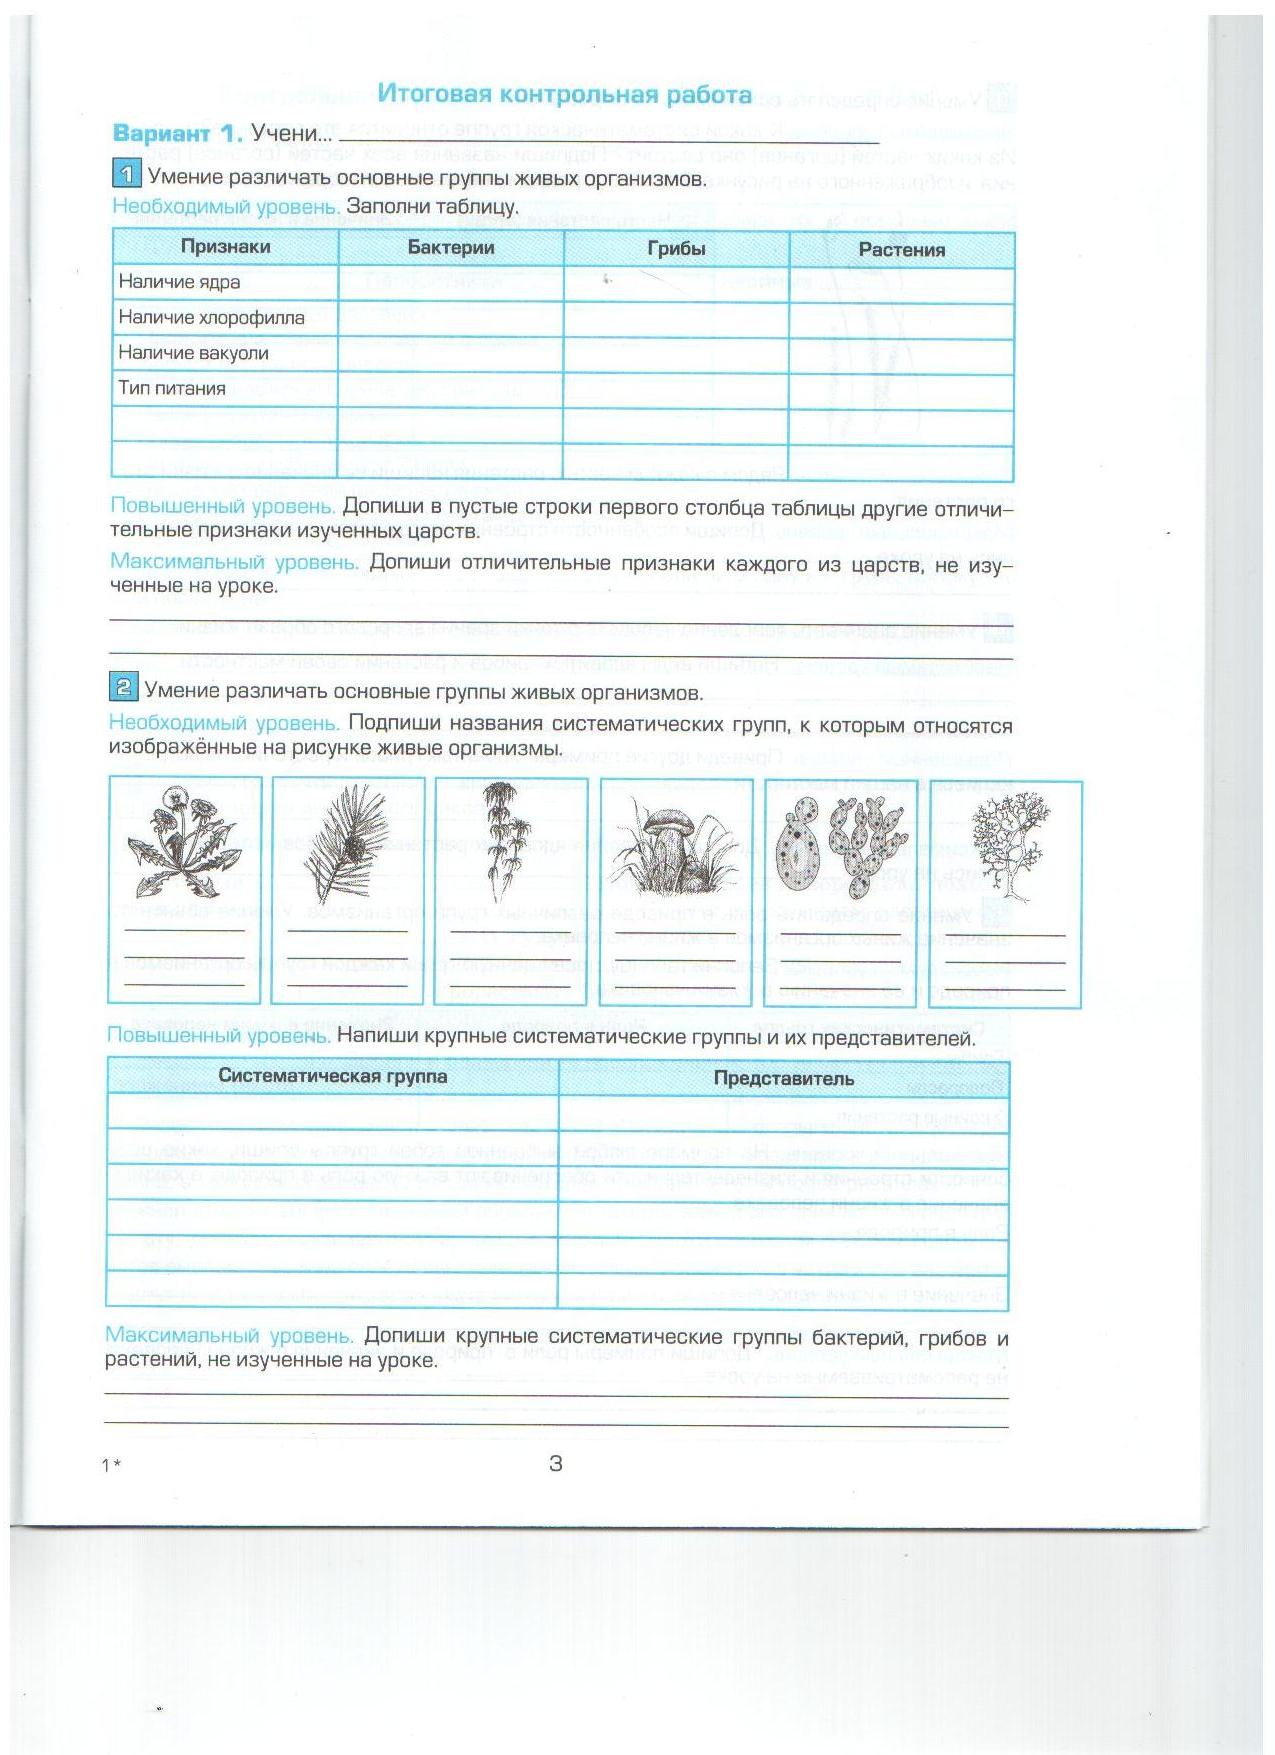 Рабочая программа по биологии ( И.Н. Пономарева, ФГОС)